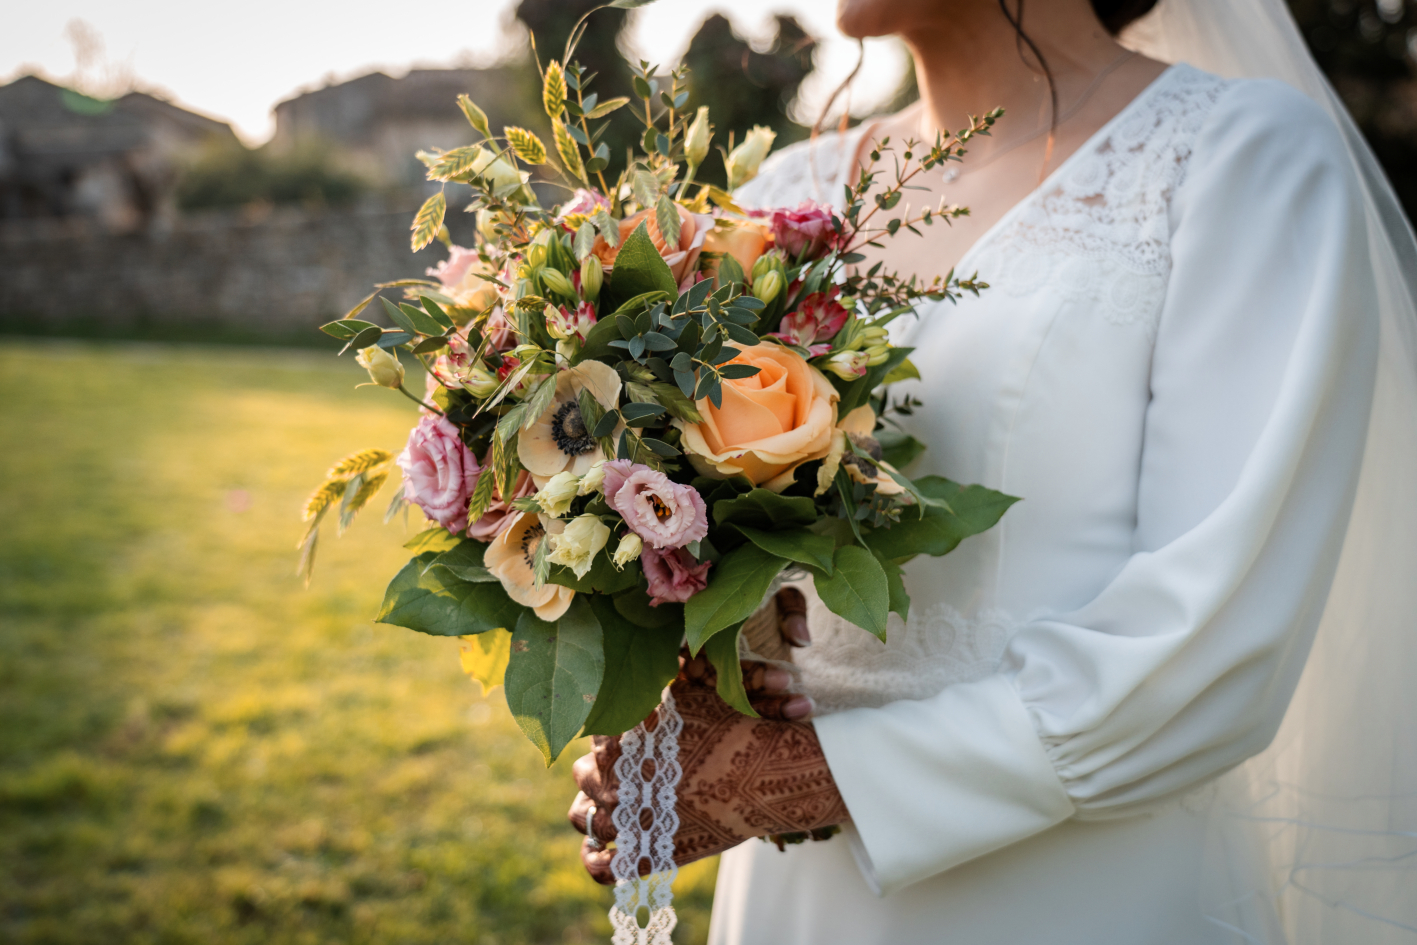 Le bouquet d'une mariée dans un parc de la région de Salon de Provence.